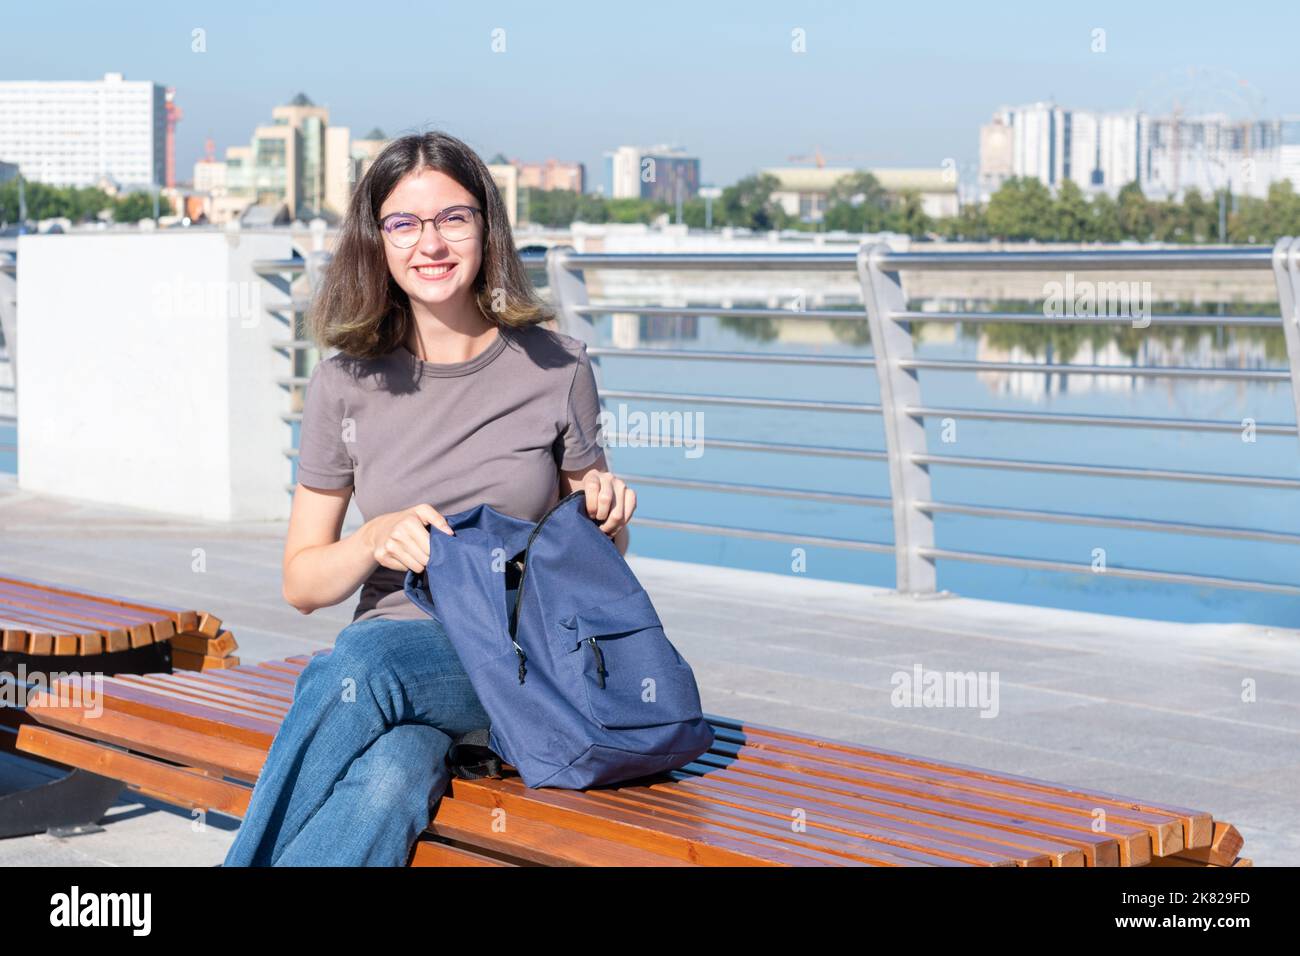 Una studentessa sorridente con gli occhiali, aprendo lo zaino, cercando qualcosa nella sua borsa, seduti all'aperto su una panca su una strada cittadina. Un adolescente s Foto Stock